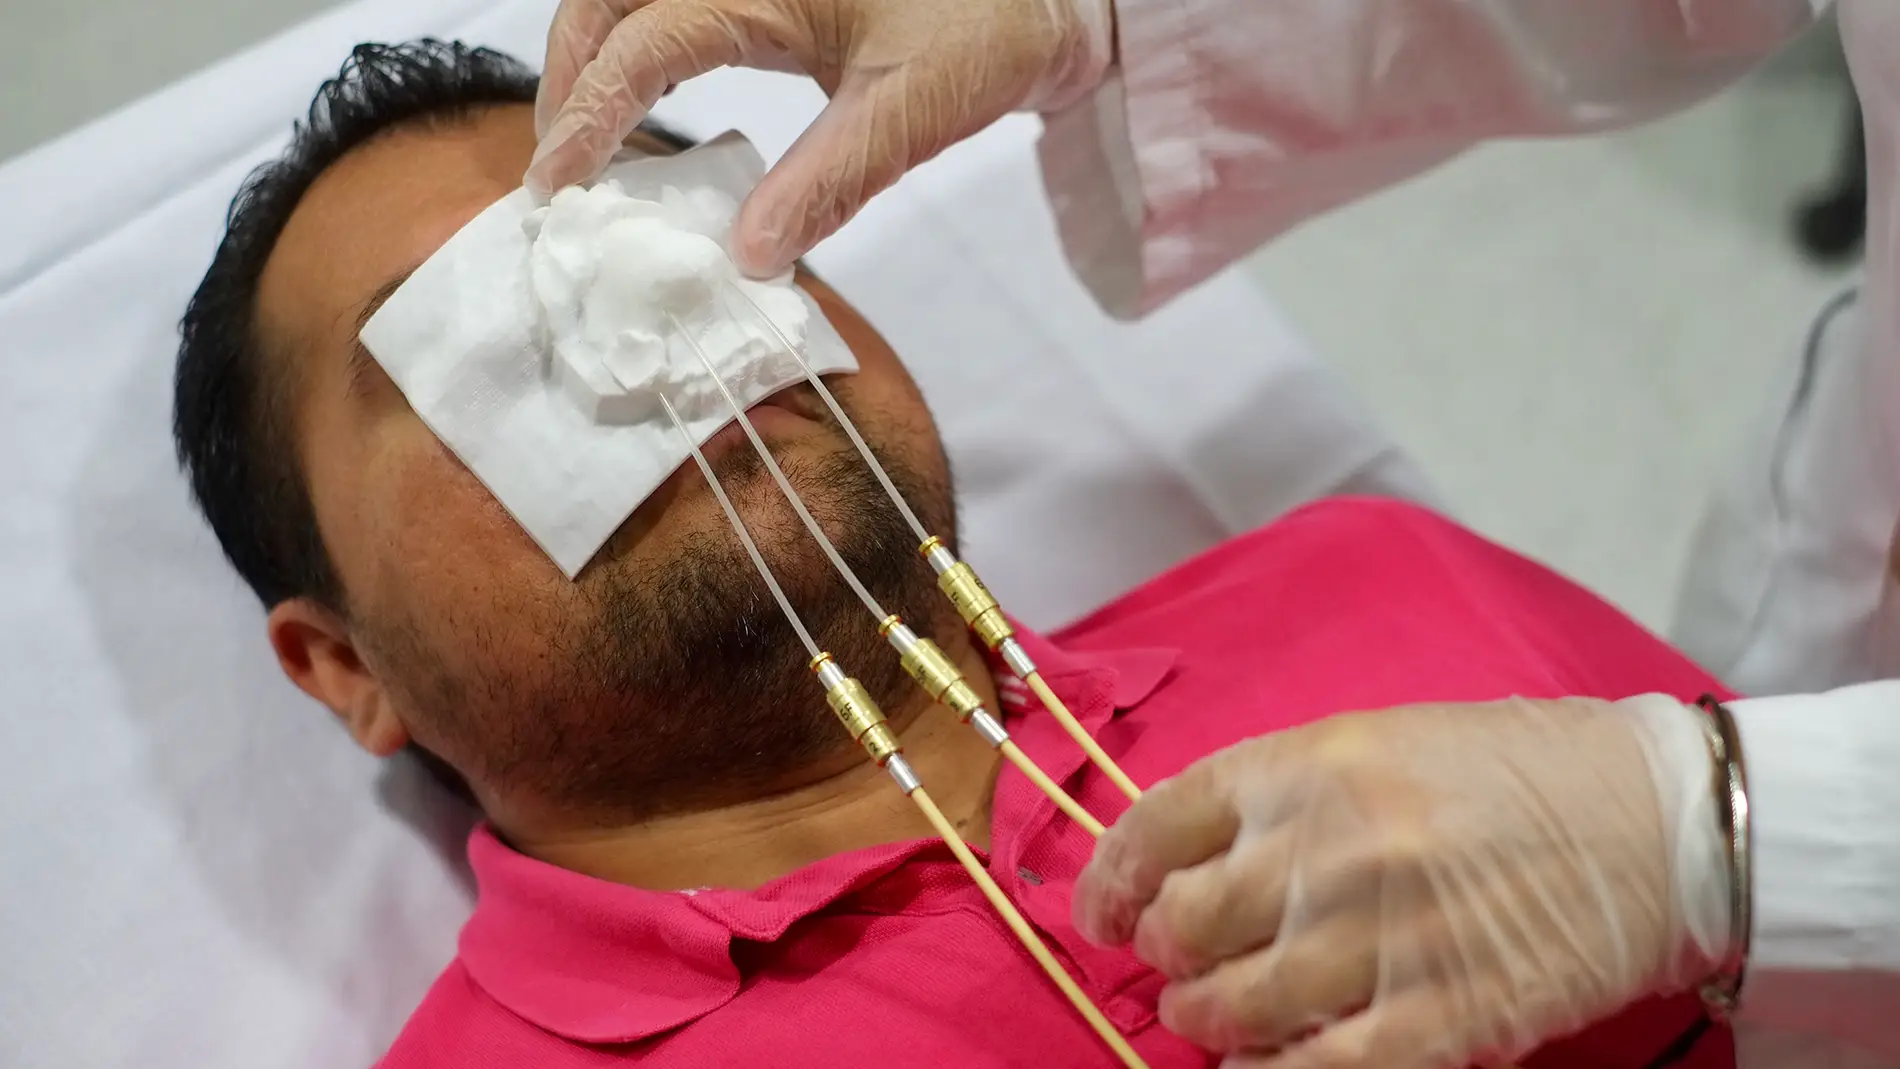 Impresion 3D para proteger la piel en el tratamiento del cancer